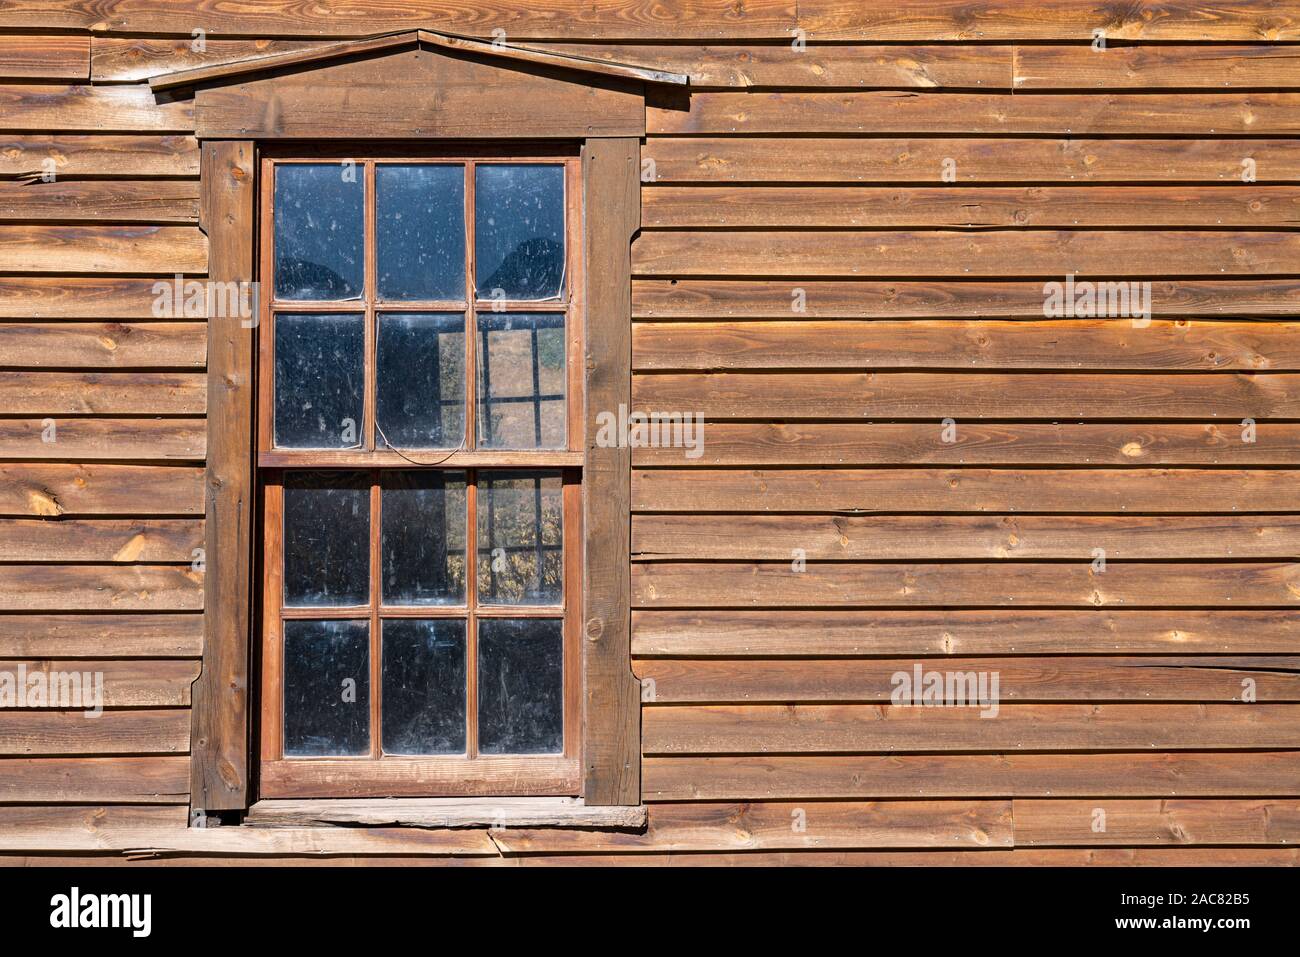 En la ventana de un edificio antiguo de madera desgastada Foto de stock